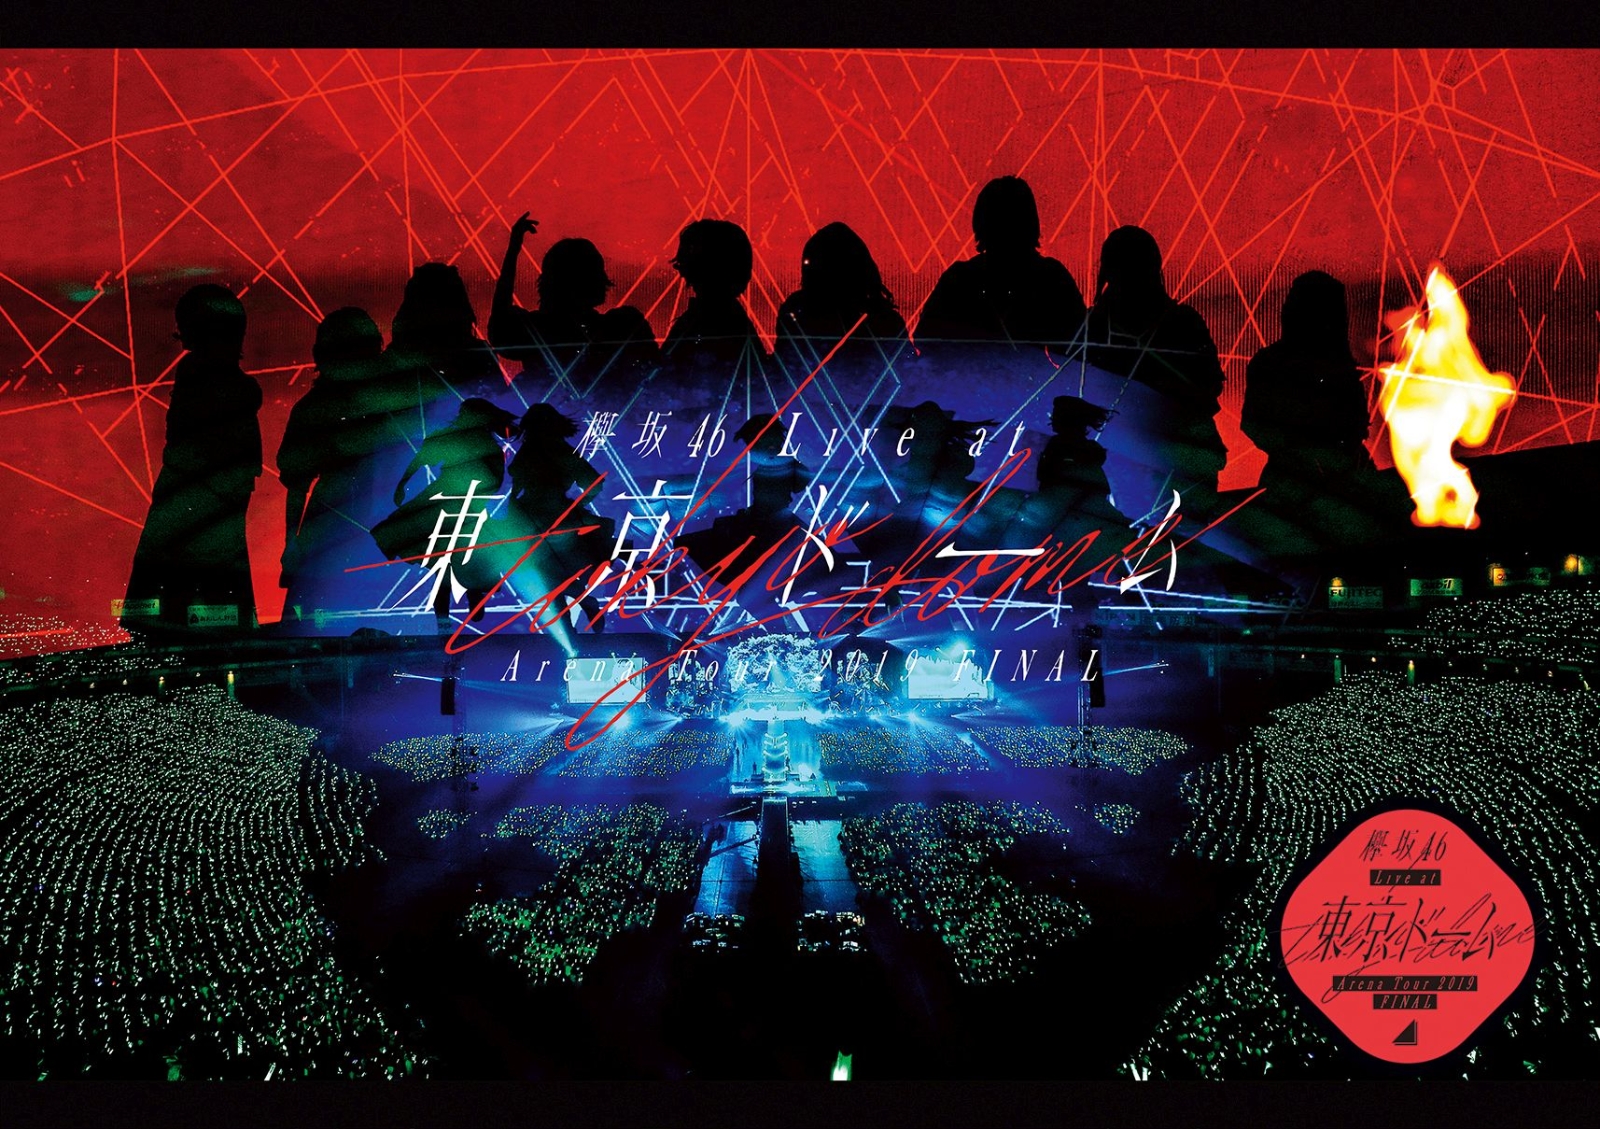 楽天ブックス 欅坂46 Live At 東京ドーム Arena Tour 19 Final 通常盤 欅坂46 Dvd